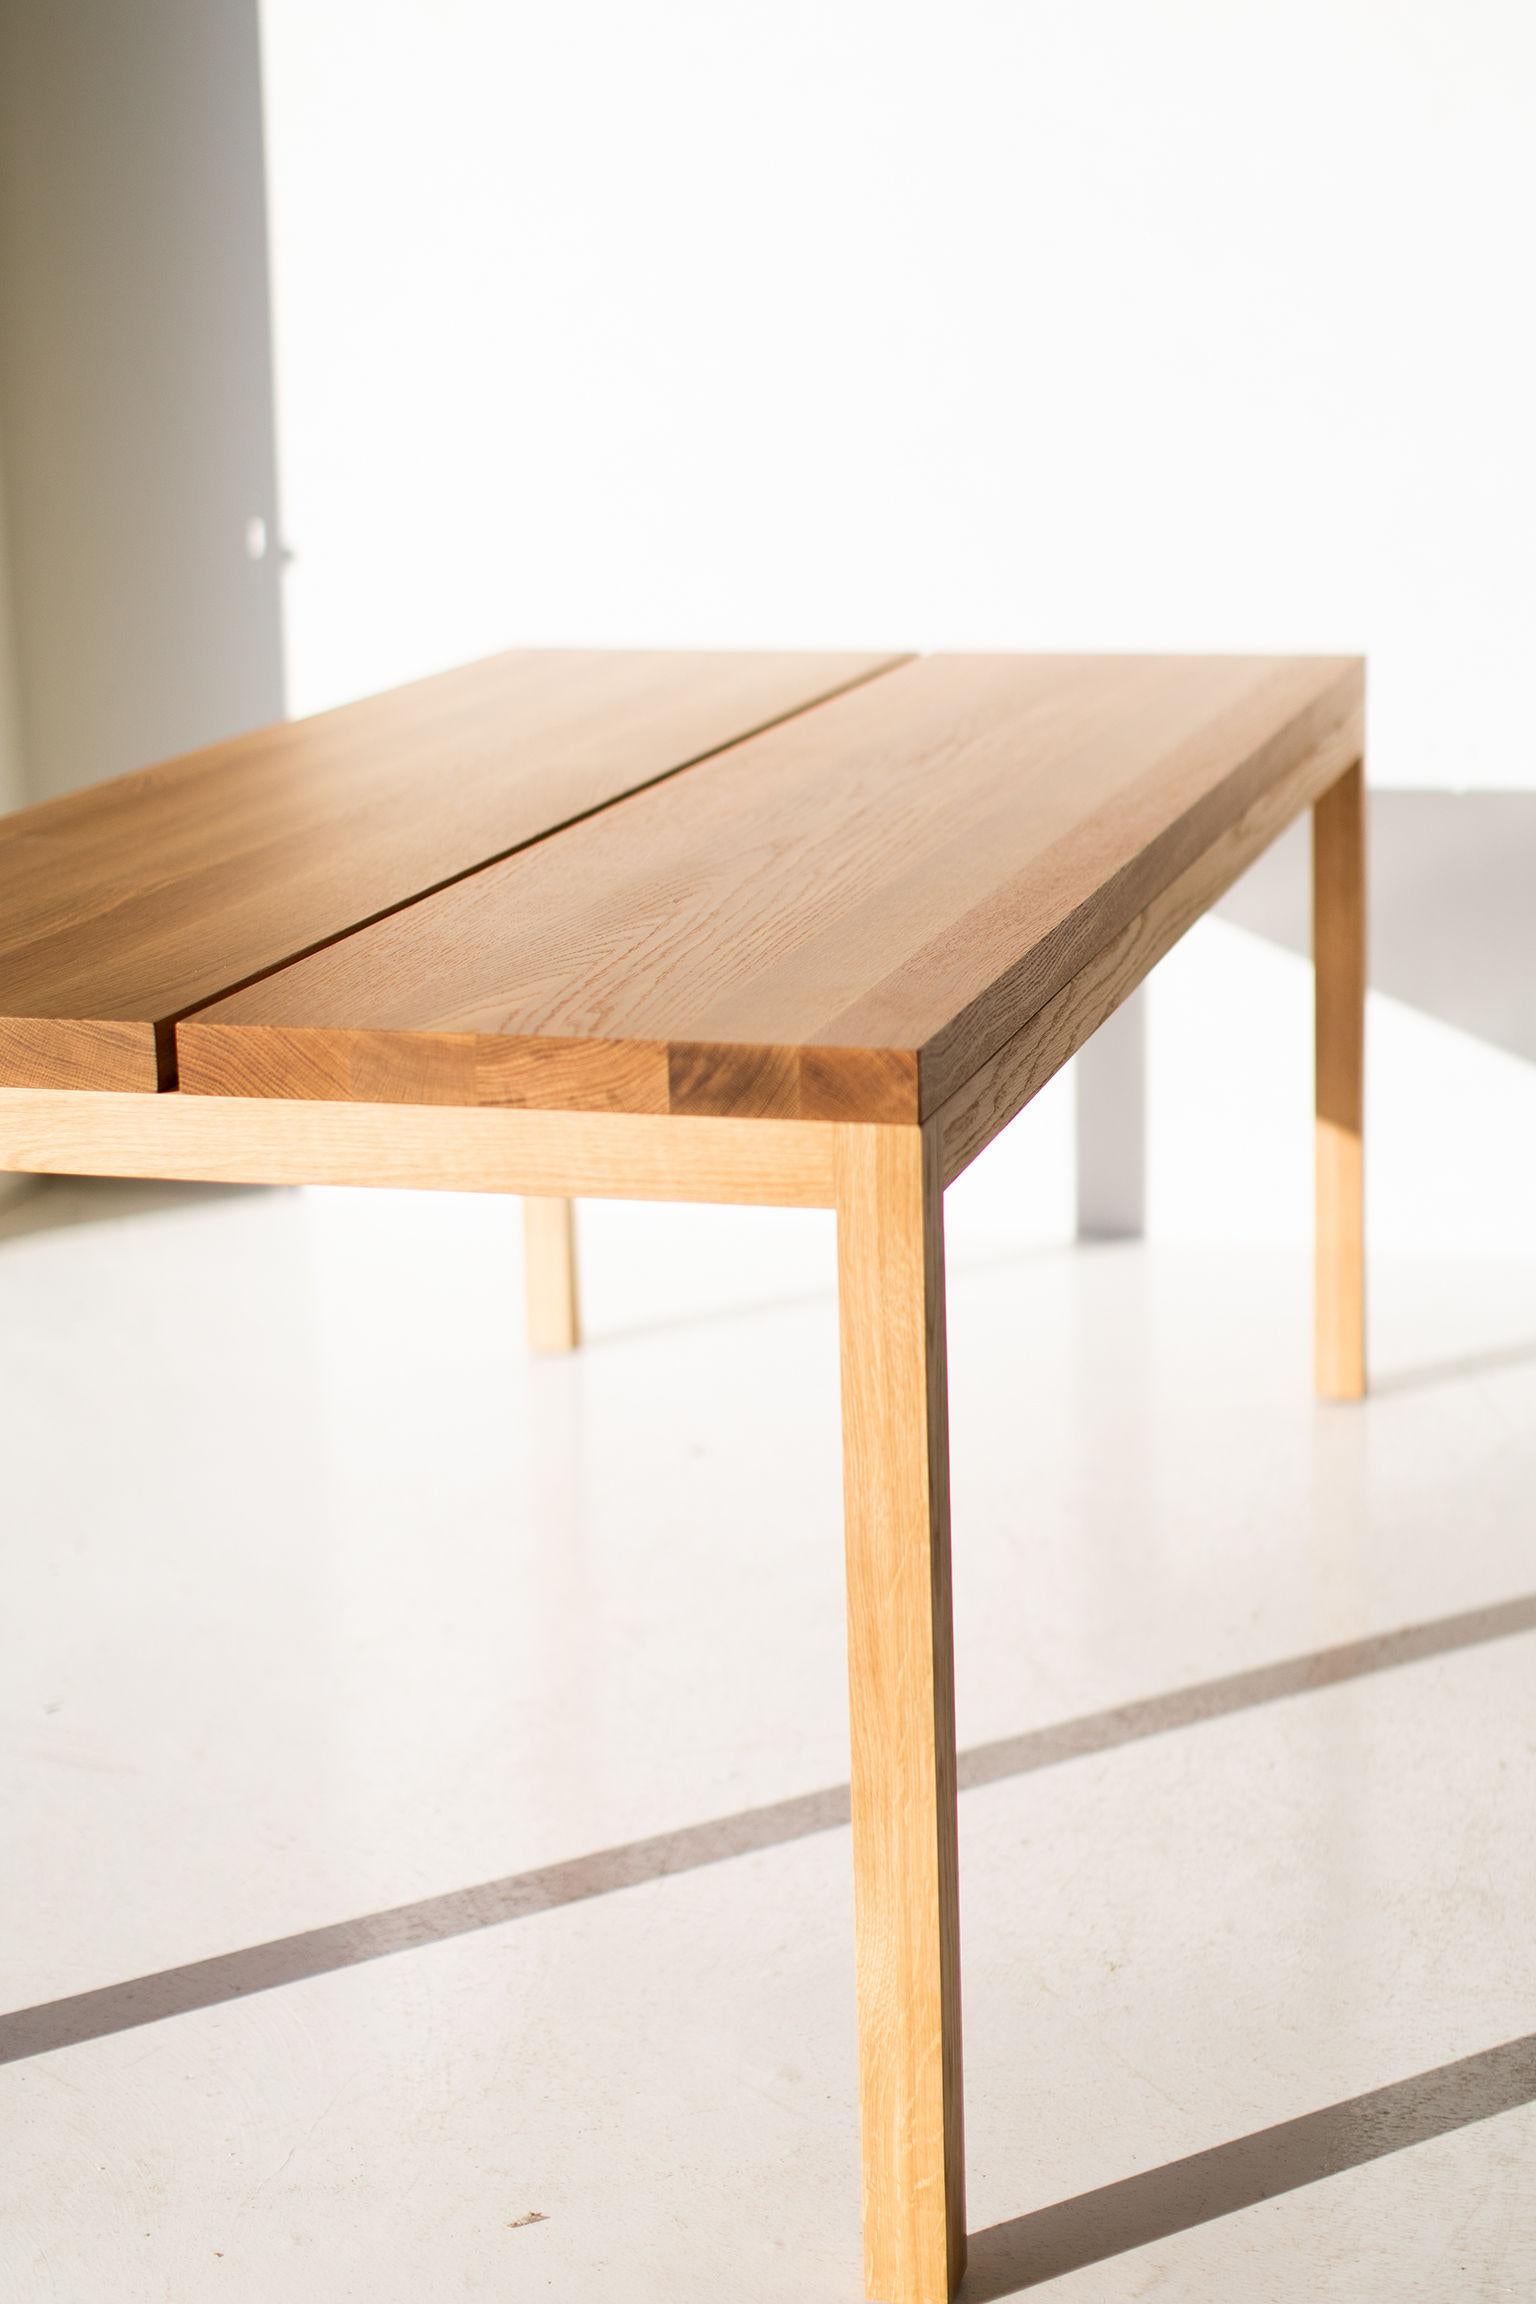 Cette table à manger moderne en chêne blanc est fabriquée au cœur de l'Ohio avec du bois d'origine locale. Nous utilisons cette magnifique table à panneaux divisés à la fois comme table à manger moderne et comme bureau. Chaque table est fabriquée à